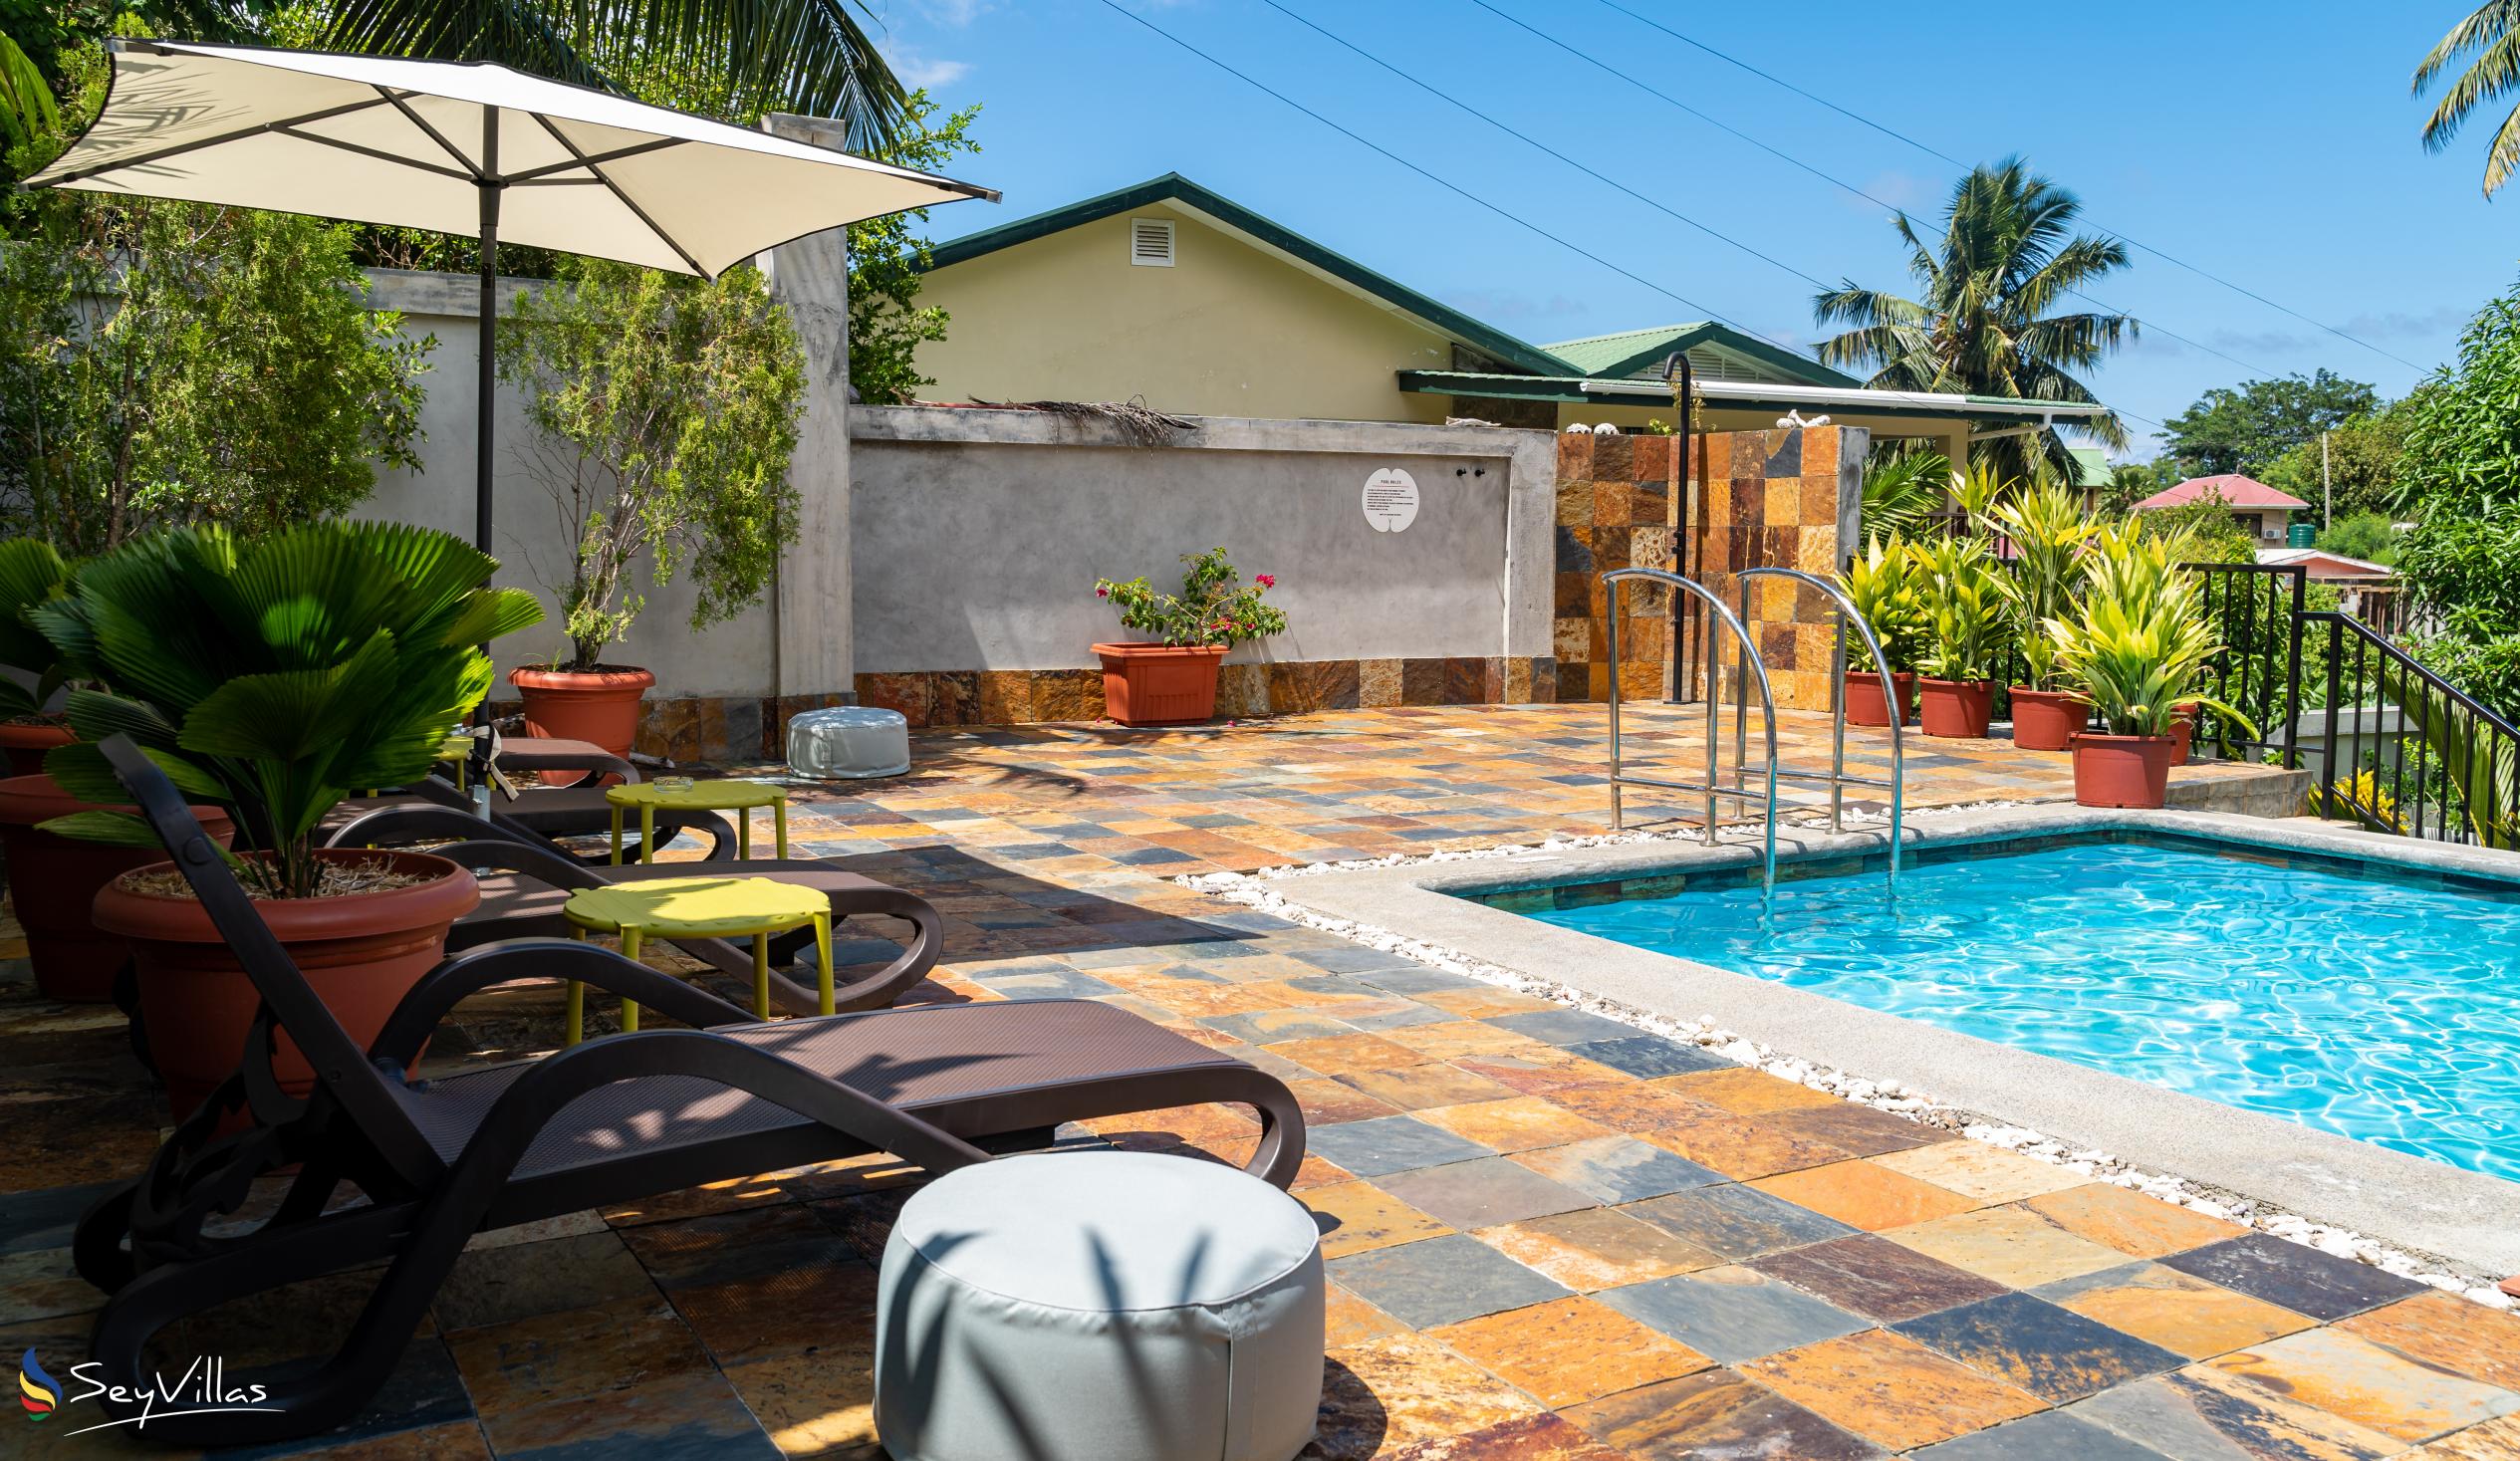 Photo 6: Lodoicea Apartments - Outdoor area - Mahé (Seychelles)